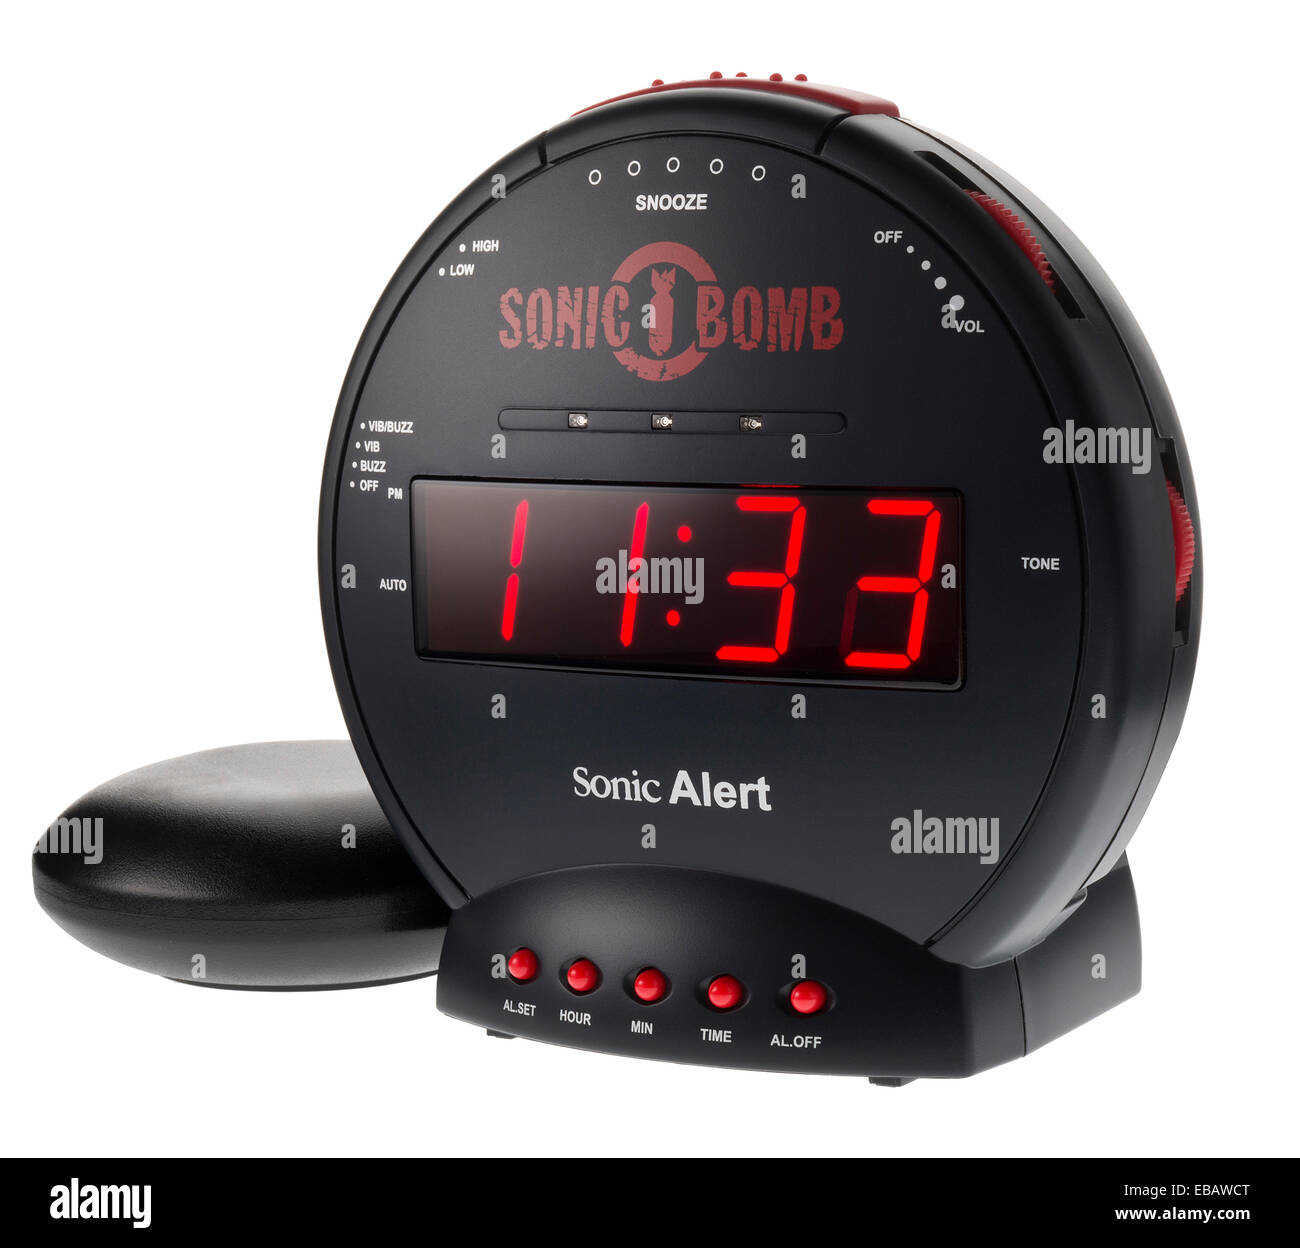 Sonic Bomb alarm clock. Stock Photo